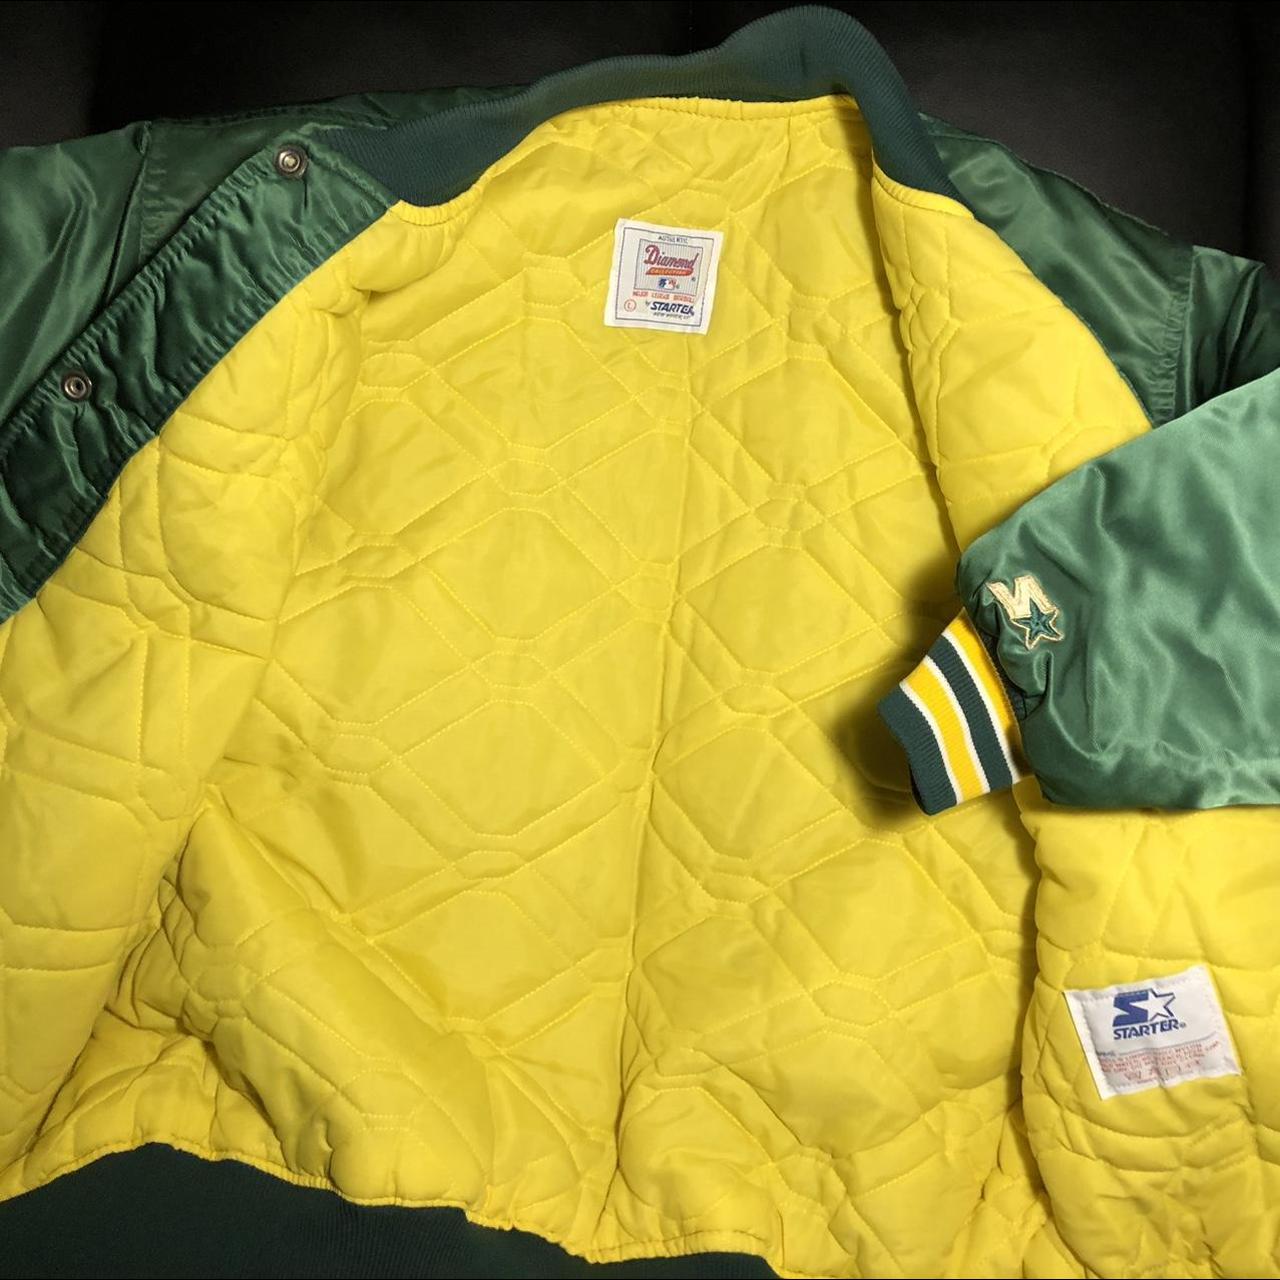 Vintage Oakland A’s Starter Jacket size L Made in... - Depop